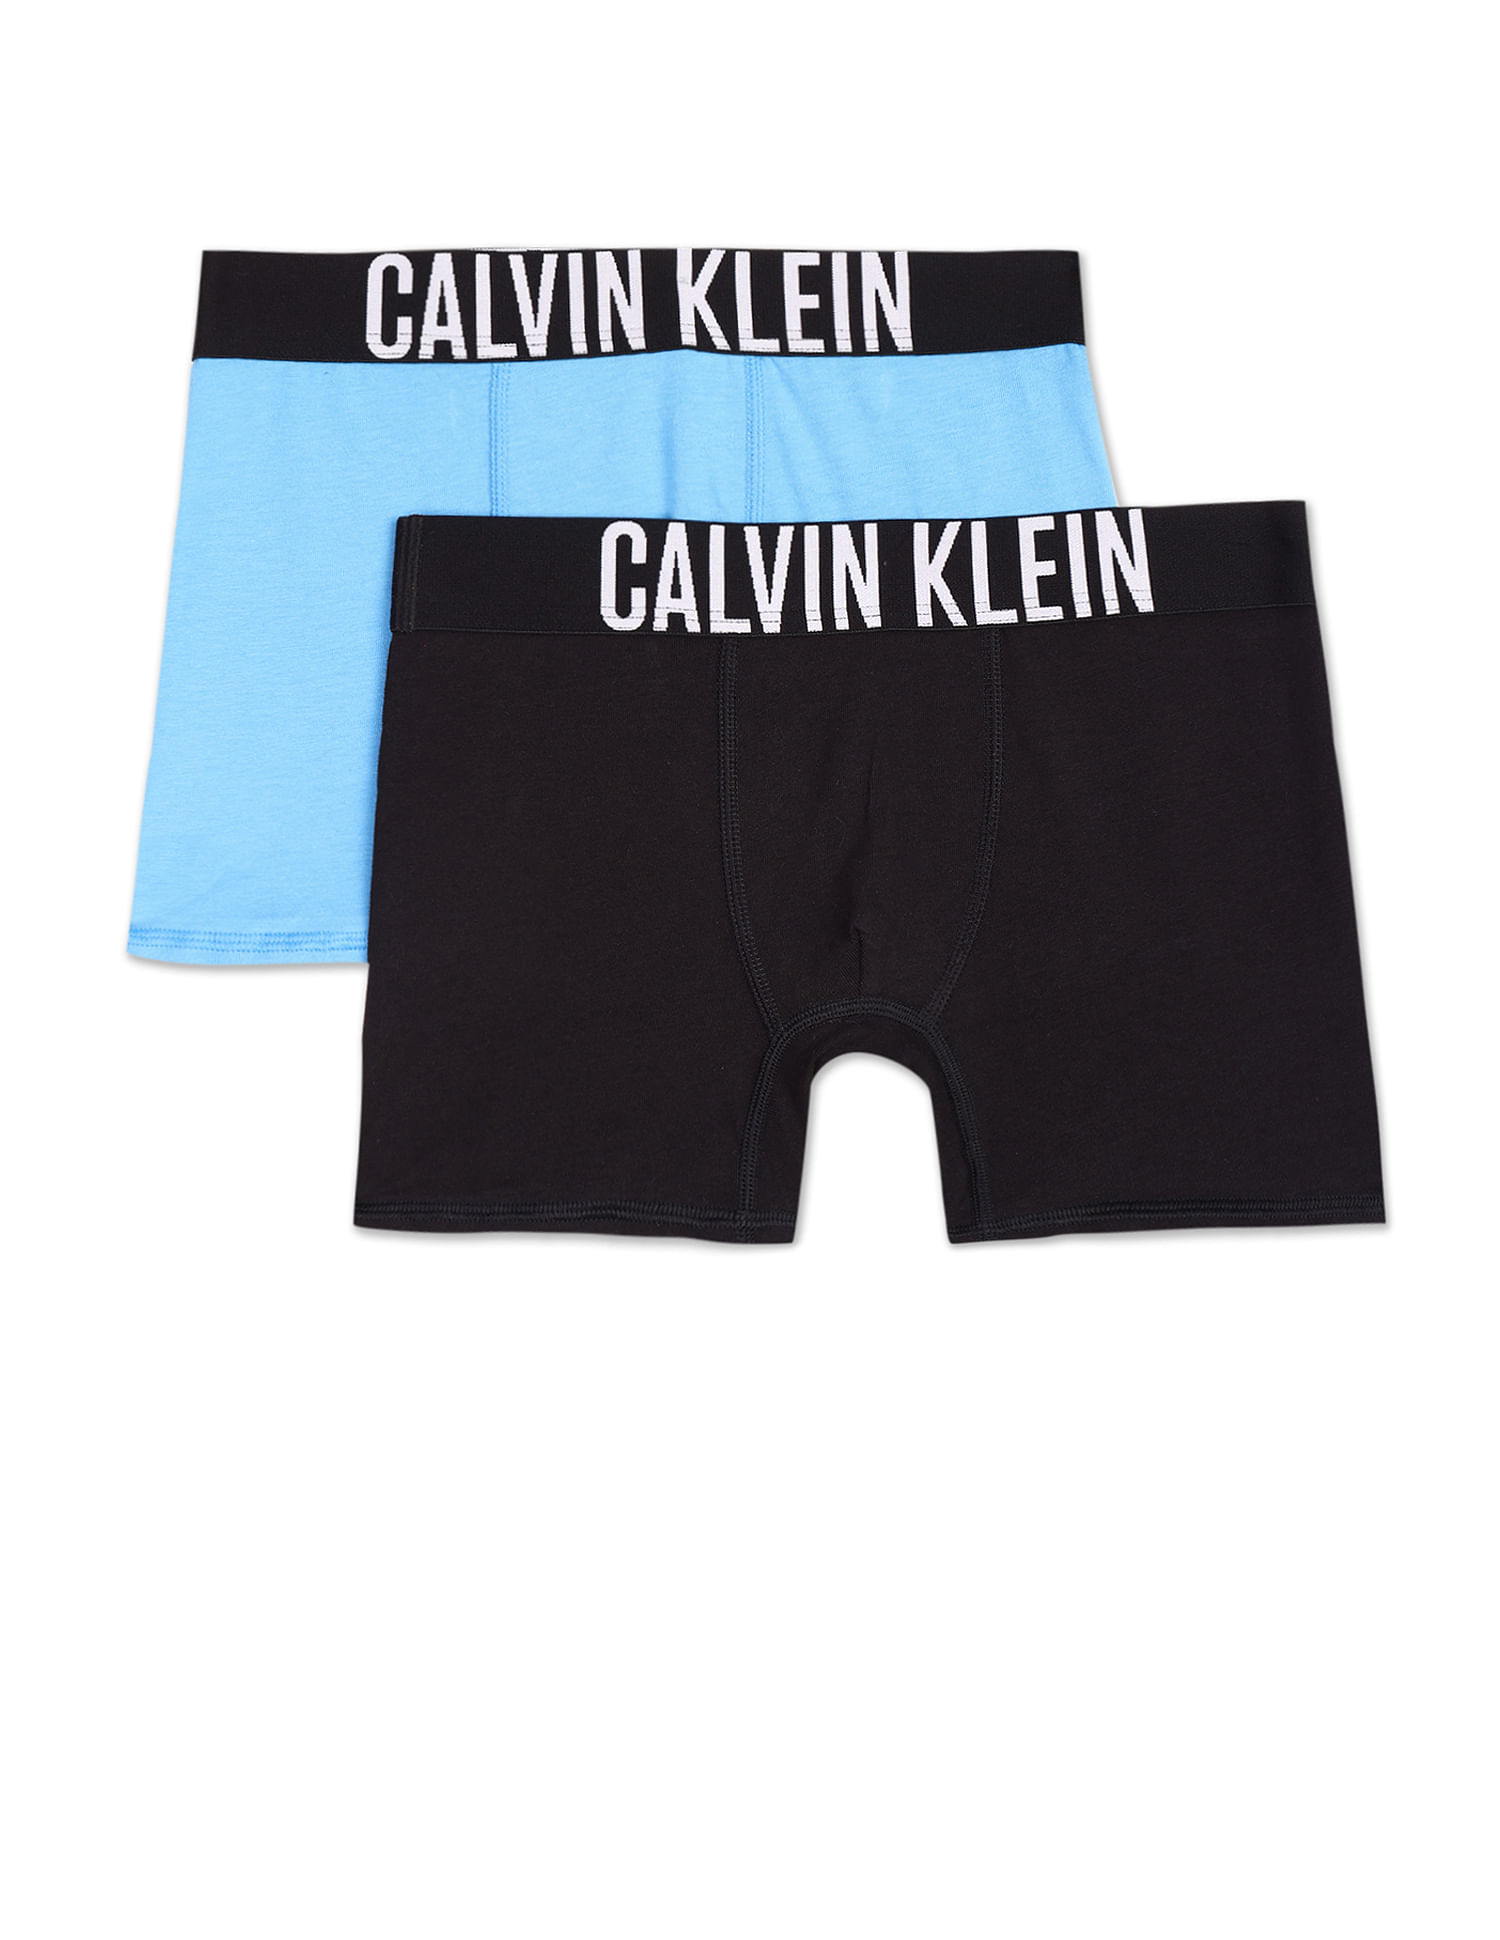 Calvin Klein Cotton Mesh Trunk - ABC Underwear